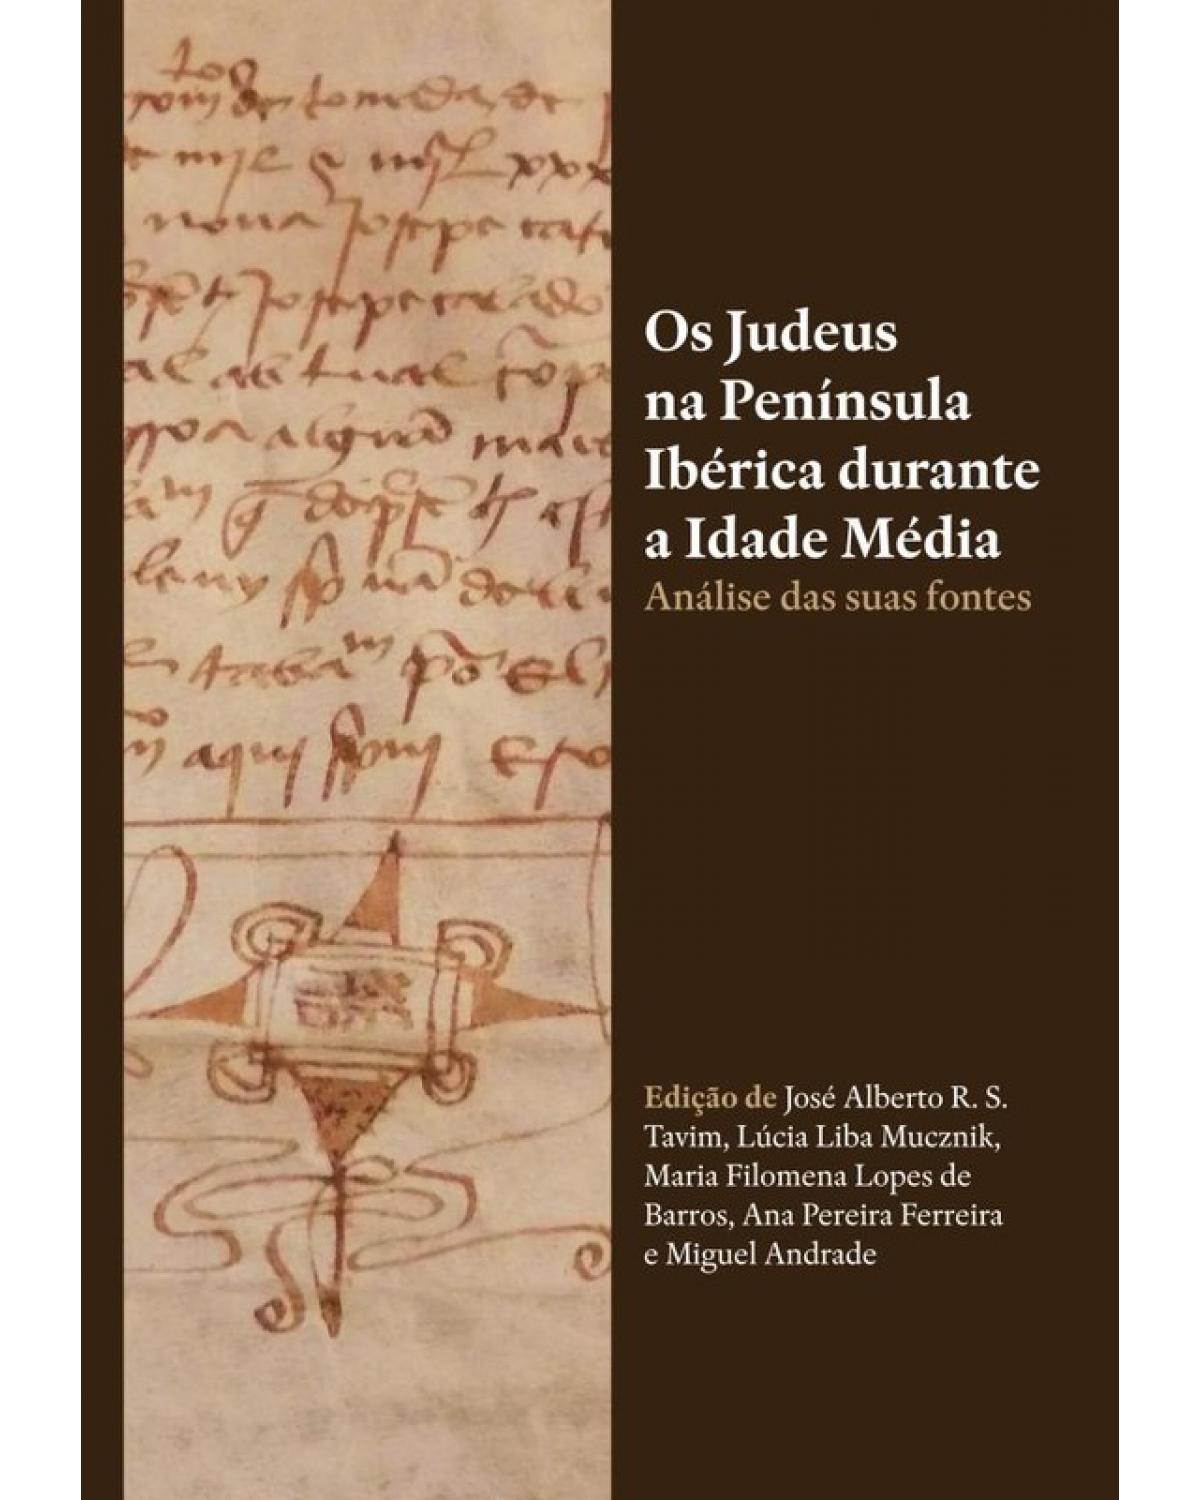 Os judeus na Península Ibérica durante a Idade Média - análise das suas fontes - 1ª Edição | 2018